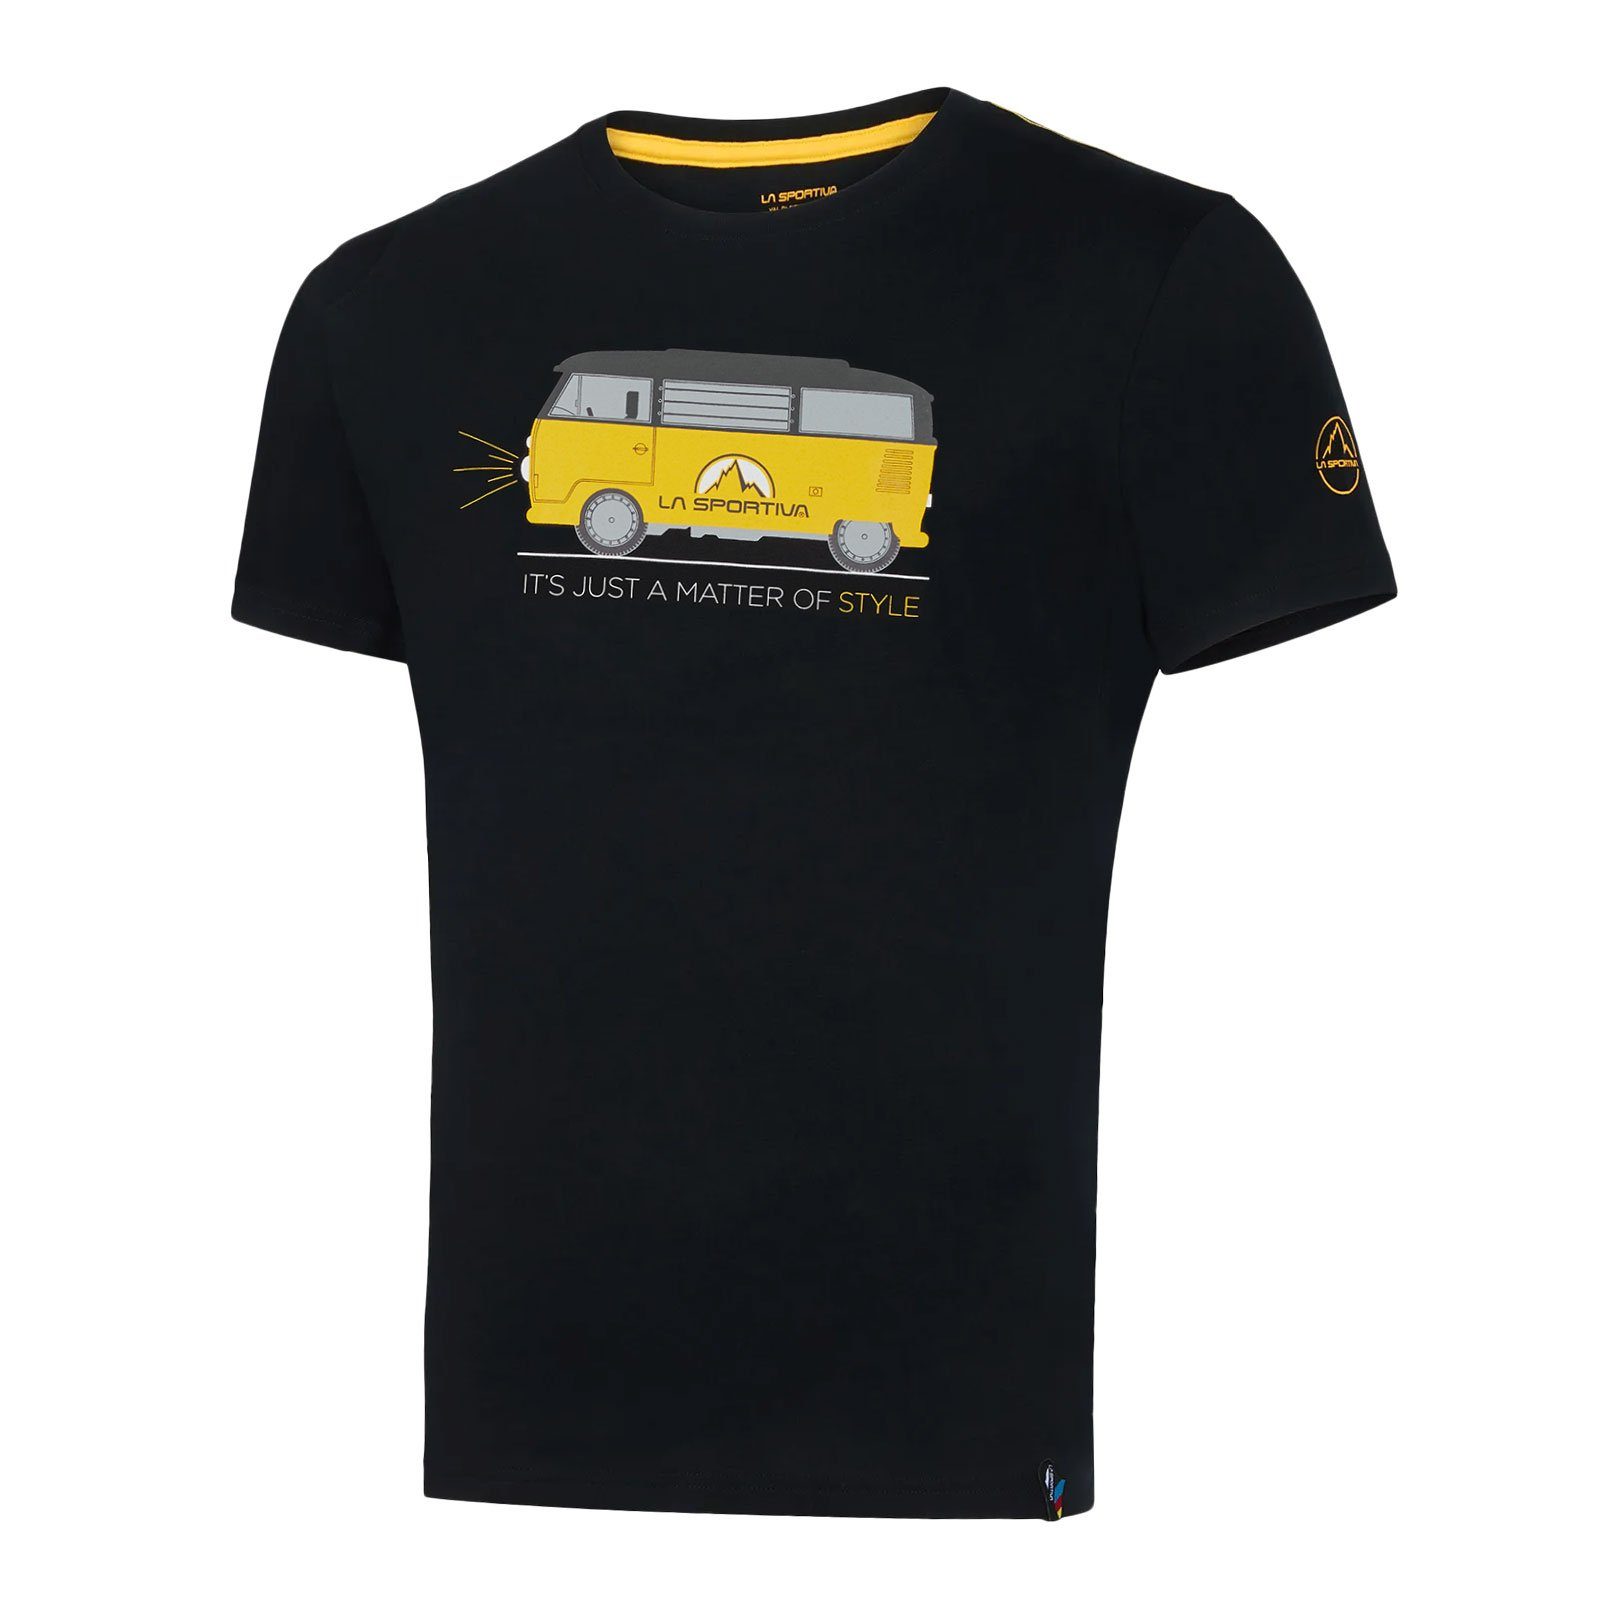 La Sportiva T-Shirt Van M aus 100% organischer Baumwolle 999999 black